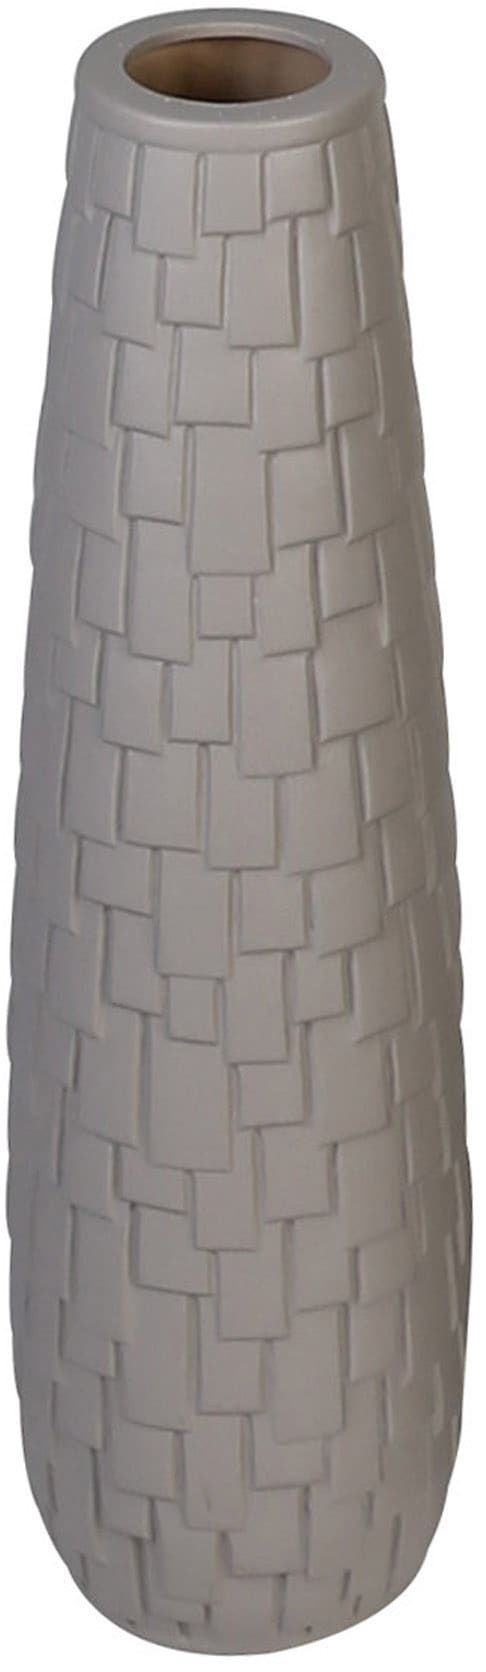 Bodenvase »Brick«, (1 St.), Keramik, matt, dekorative Riemchen-Struktur, 57 cm hoch